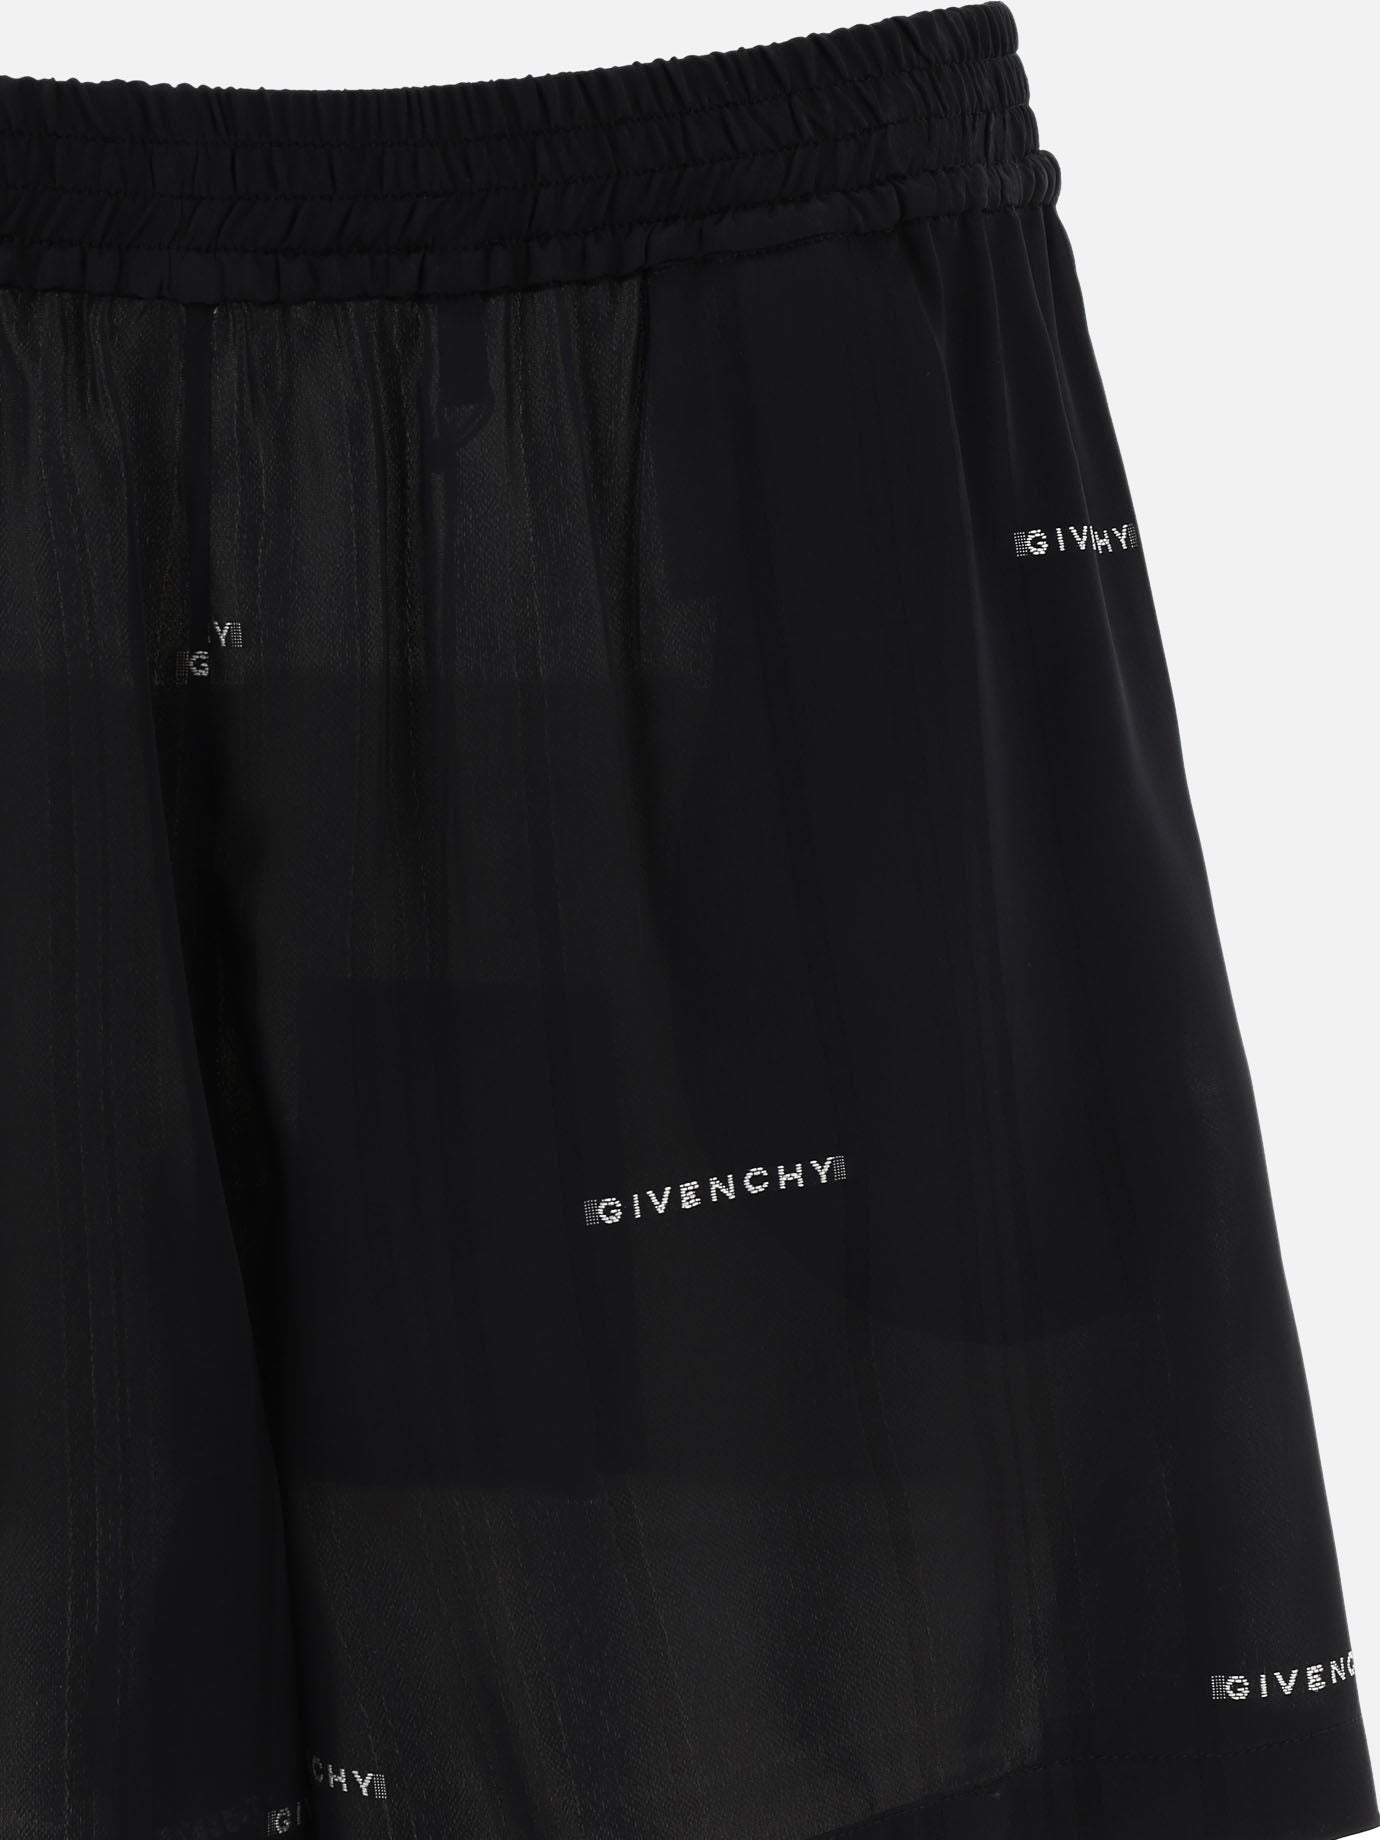 "Givenchy Jacquard" shorts